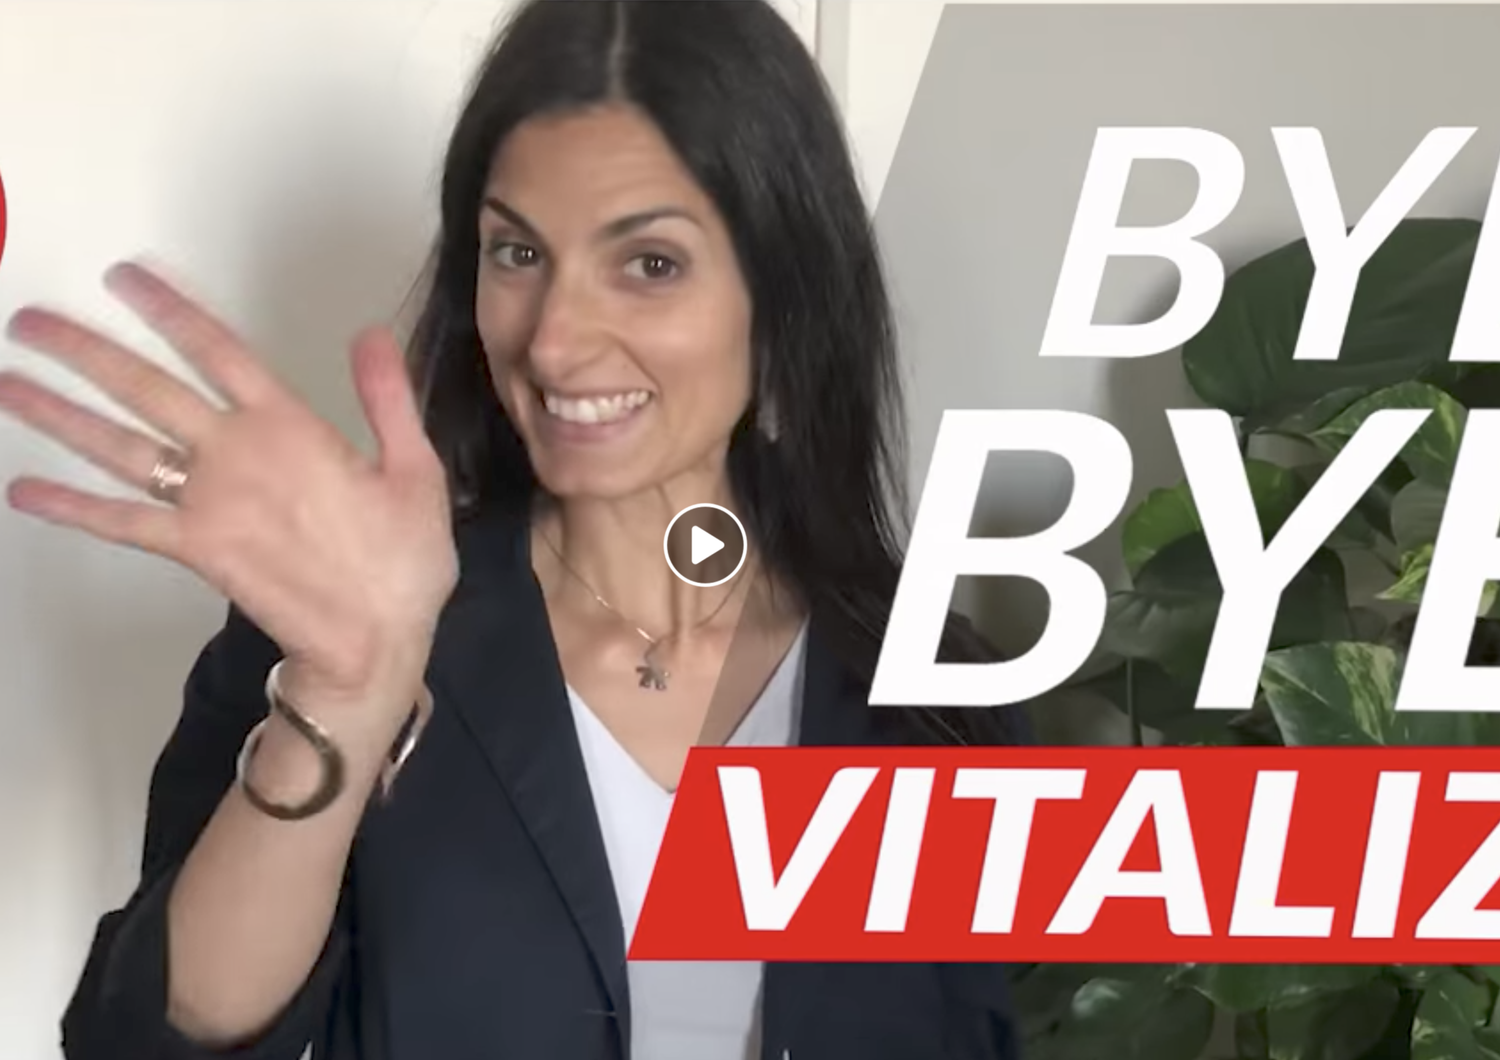 Il video con cui Virginia Raggi fa &quot;bye bye&quot; ai vitalizi&nbsp;